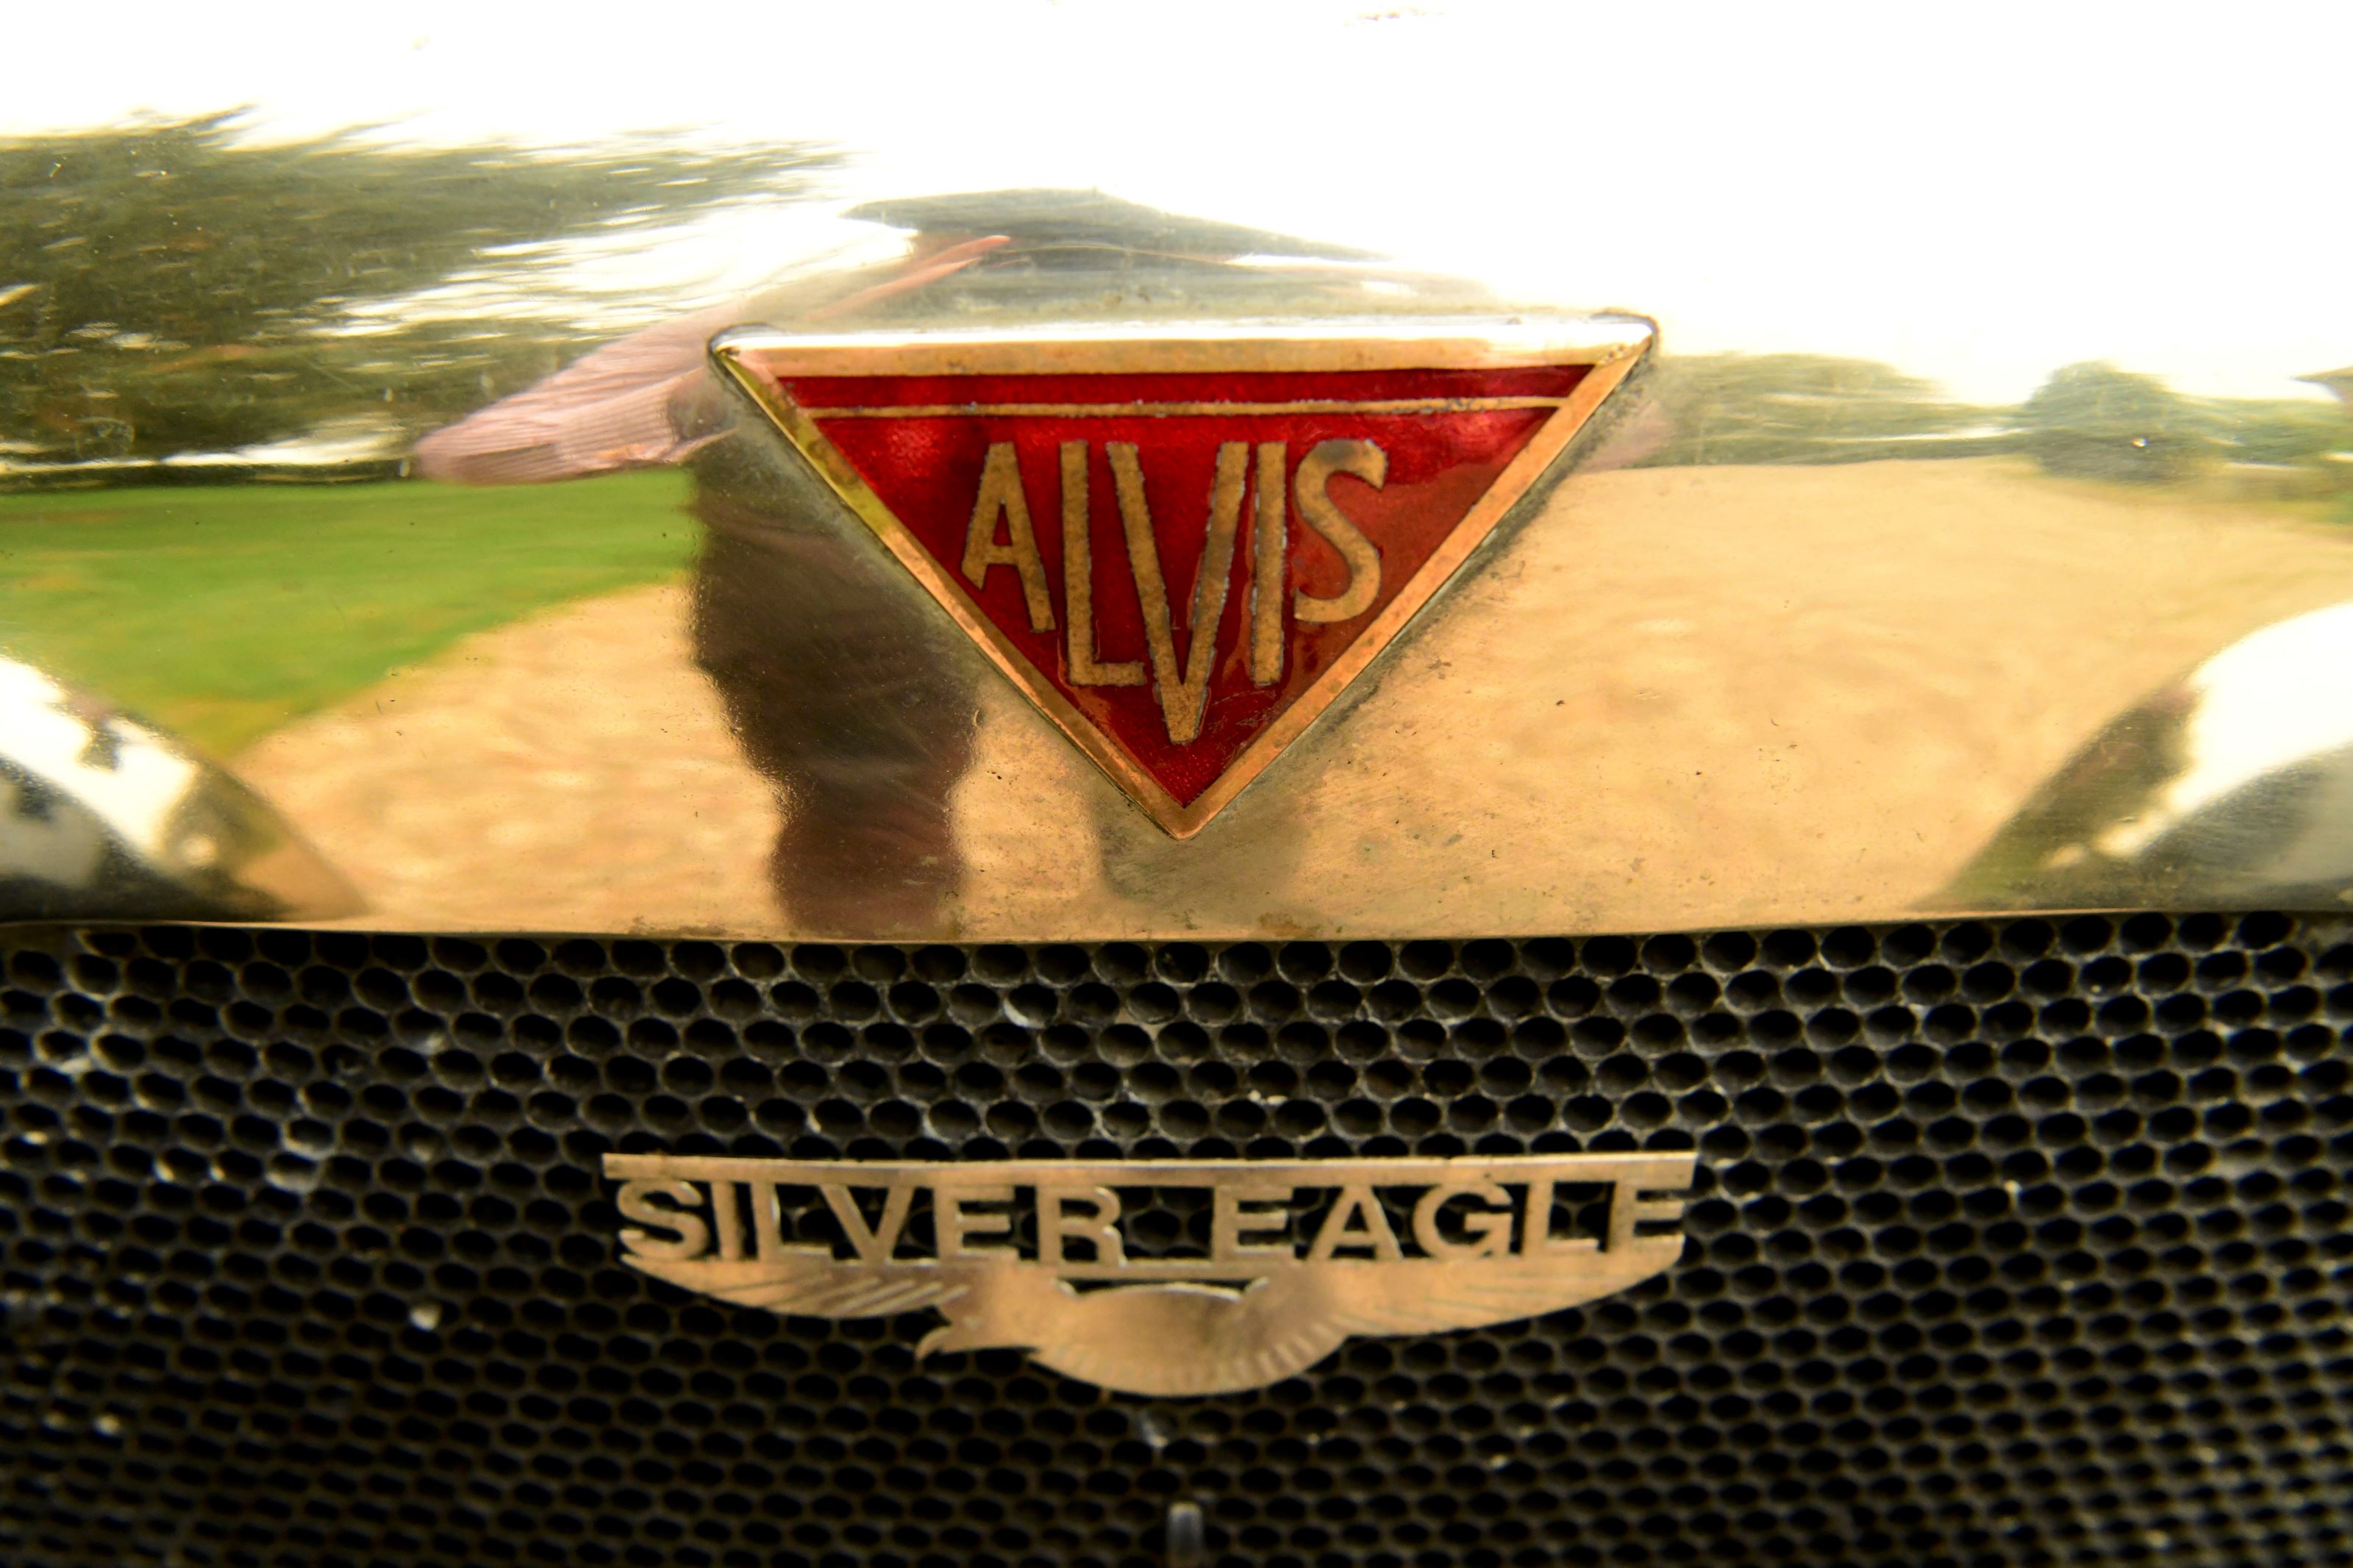 Alvis  silver eagle tourer 7muv6flyinfwyjq4y1byz